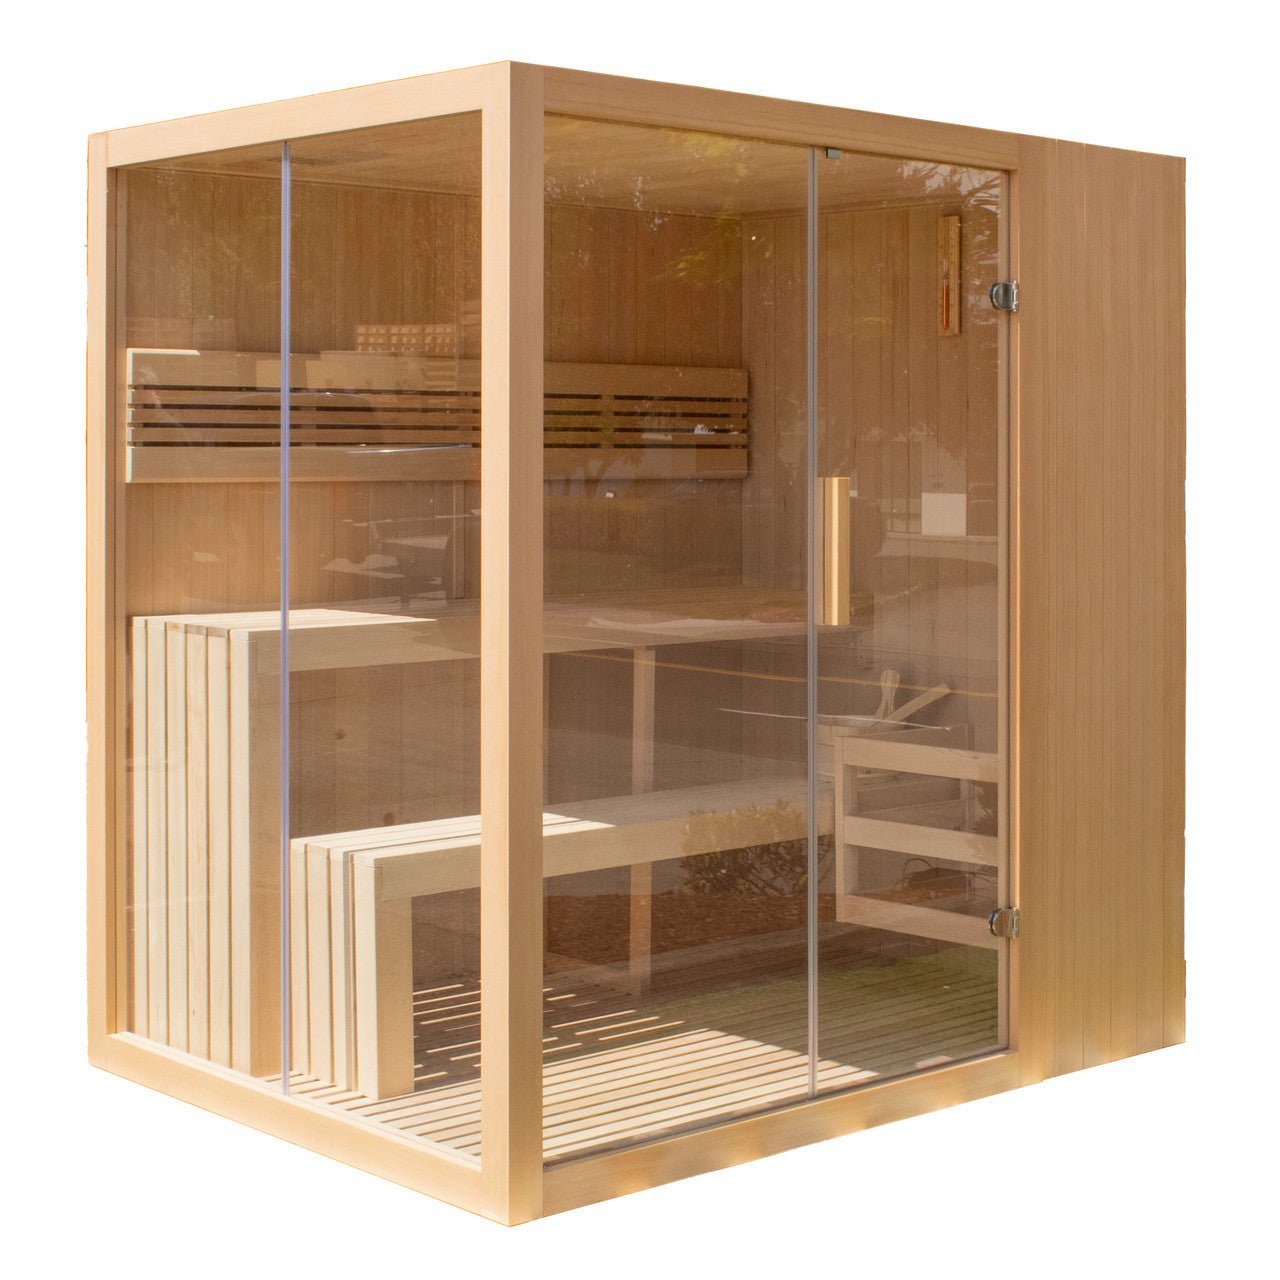 Aleko Canadian Hemlock Indoor Wet Dry Sauna with LED Lights - 4.5 kW UL Certified Heater - 4-6 Person - The Sauna World